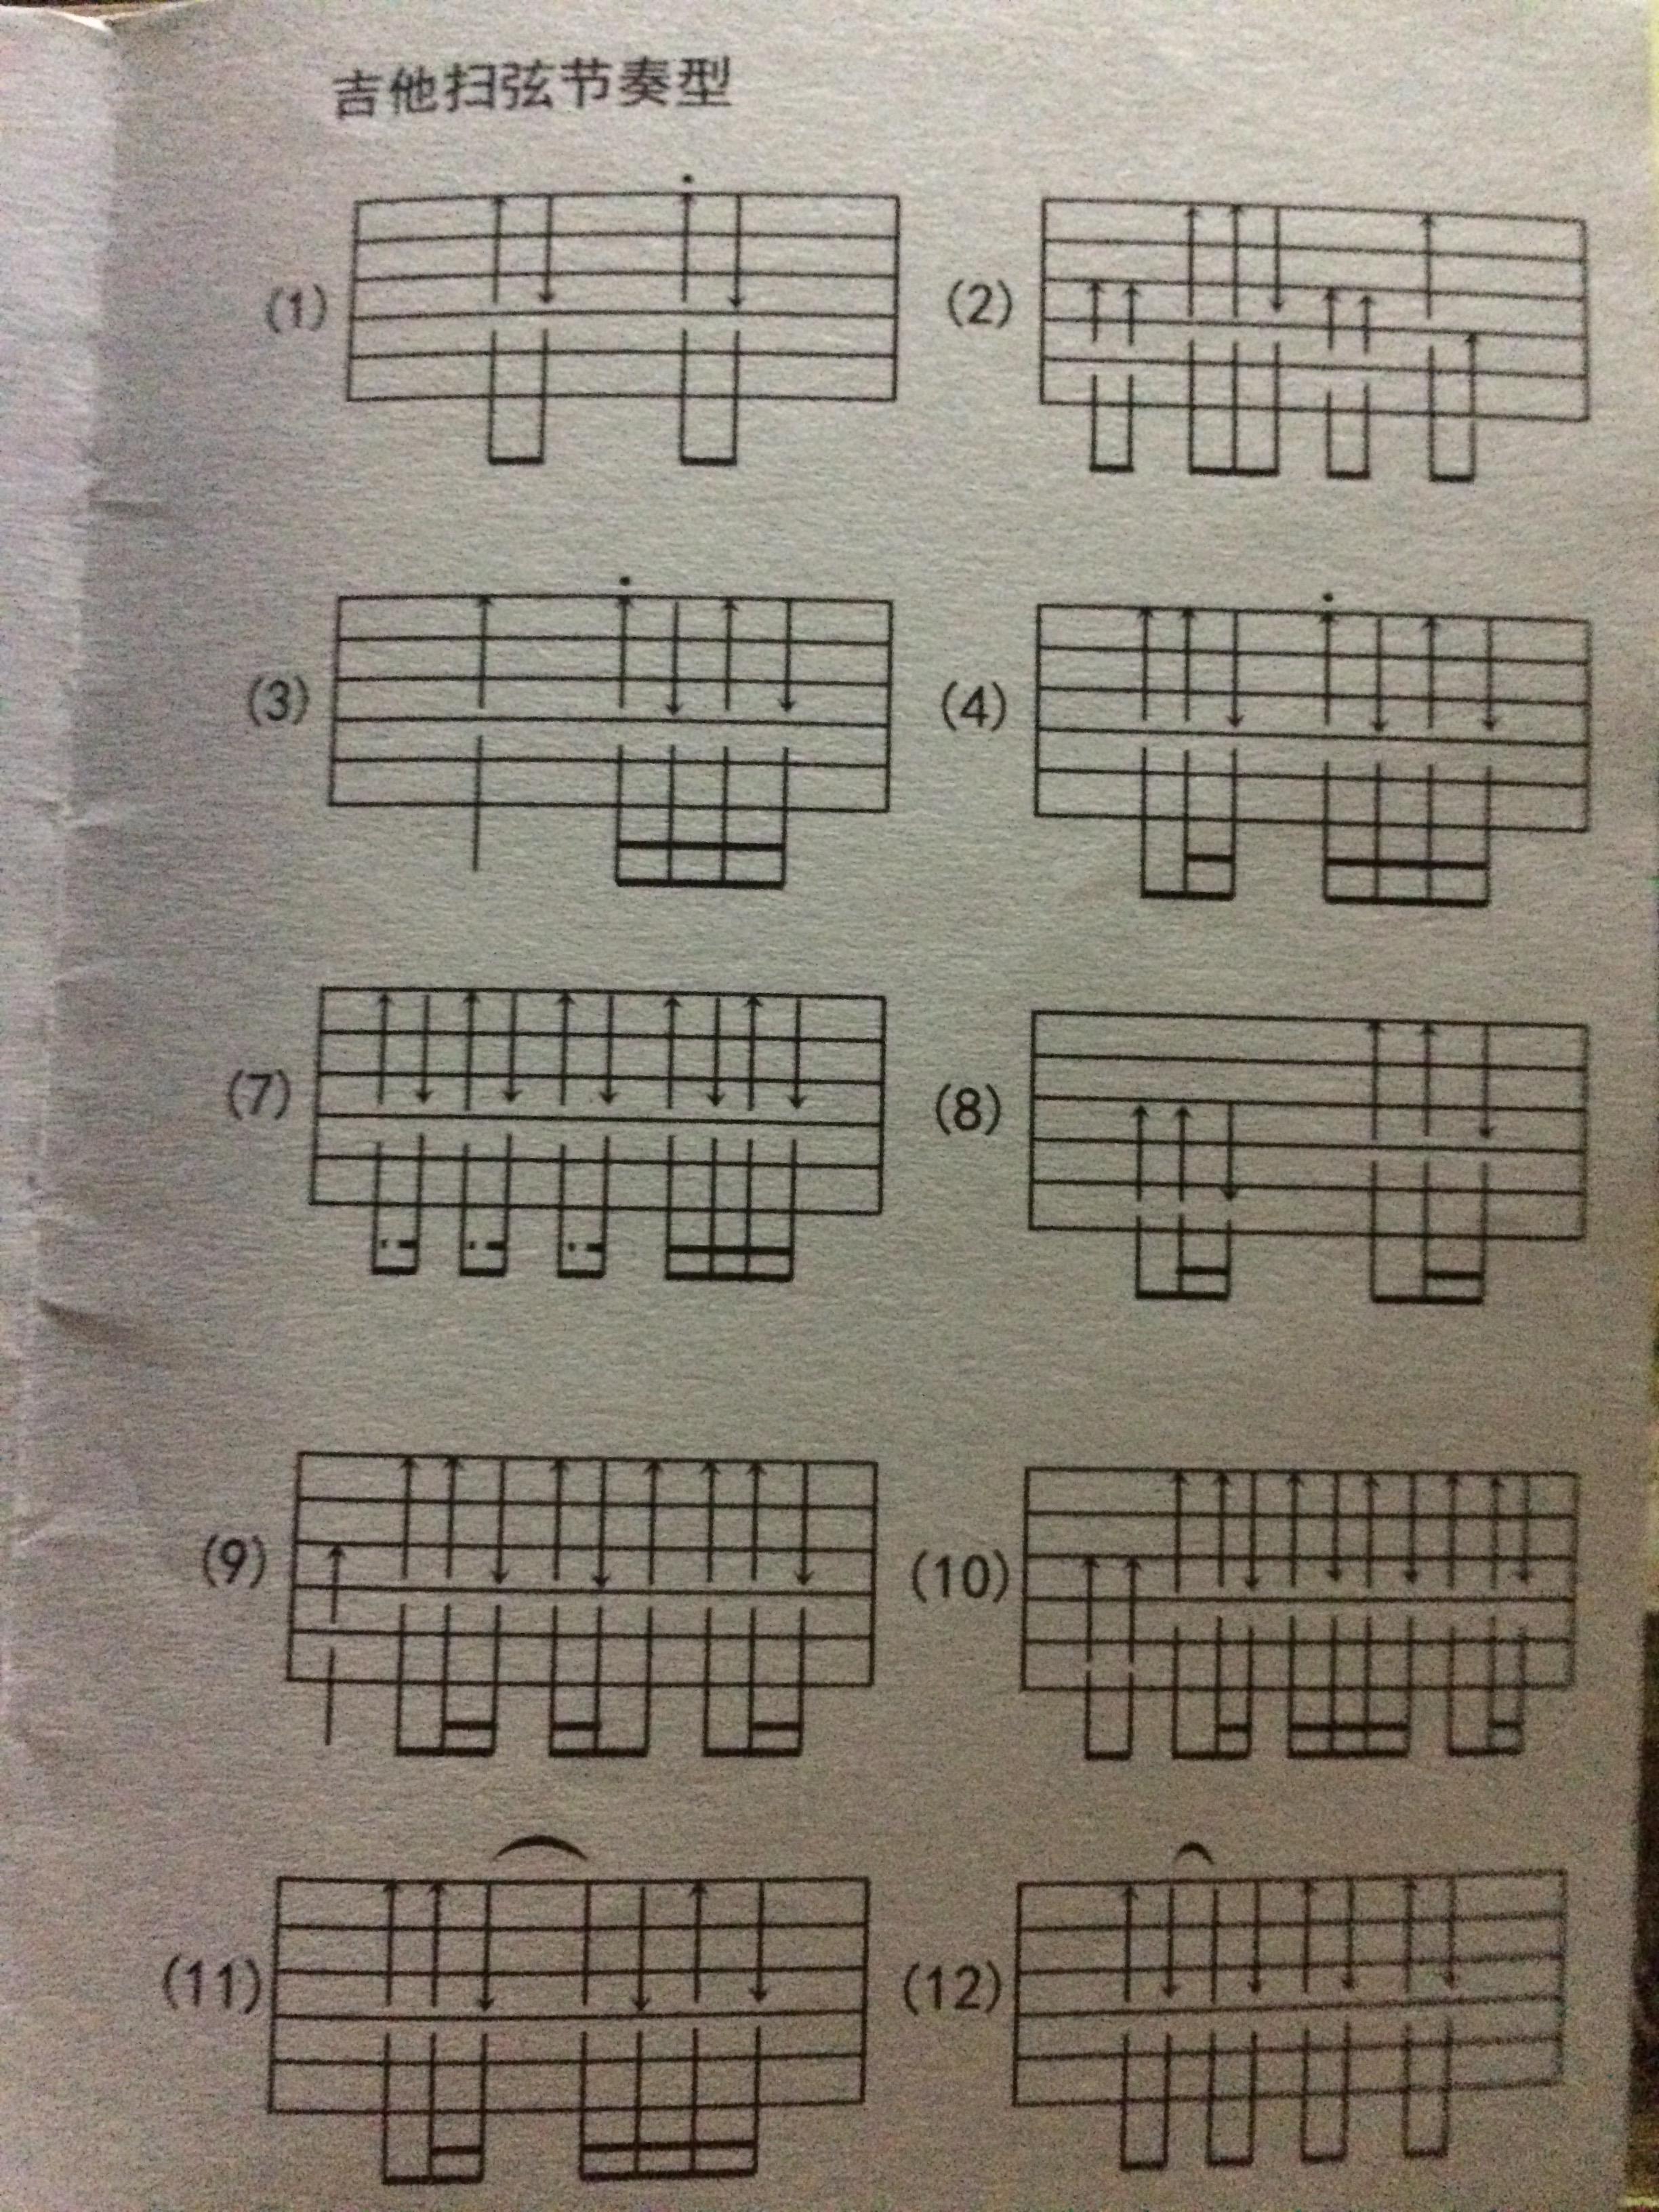 吉他拍弦节奏型6种图片